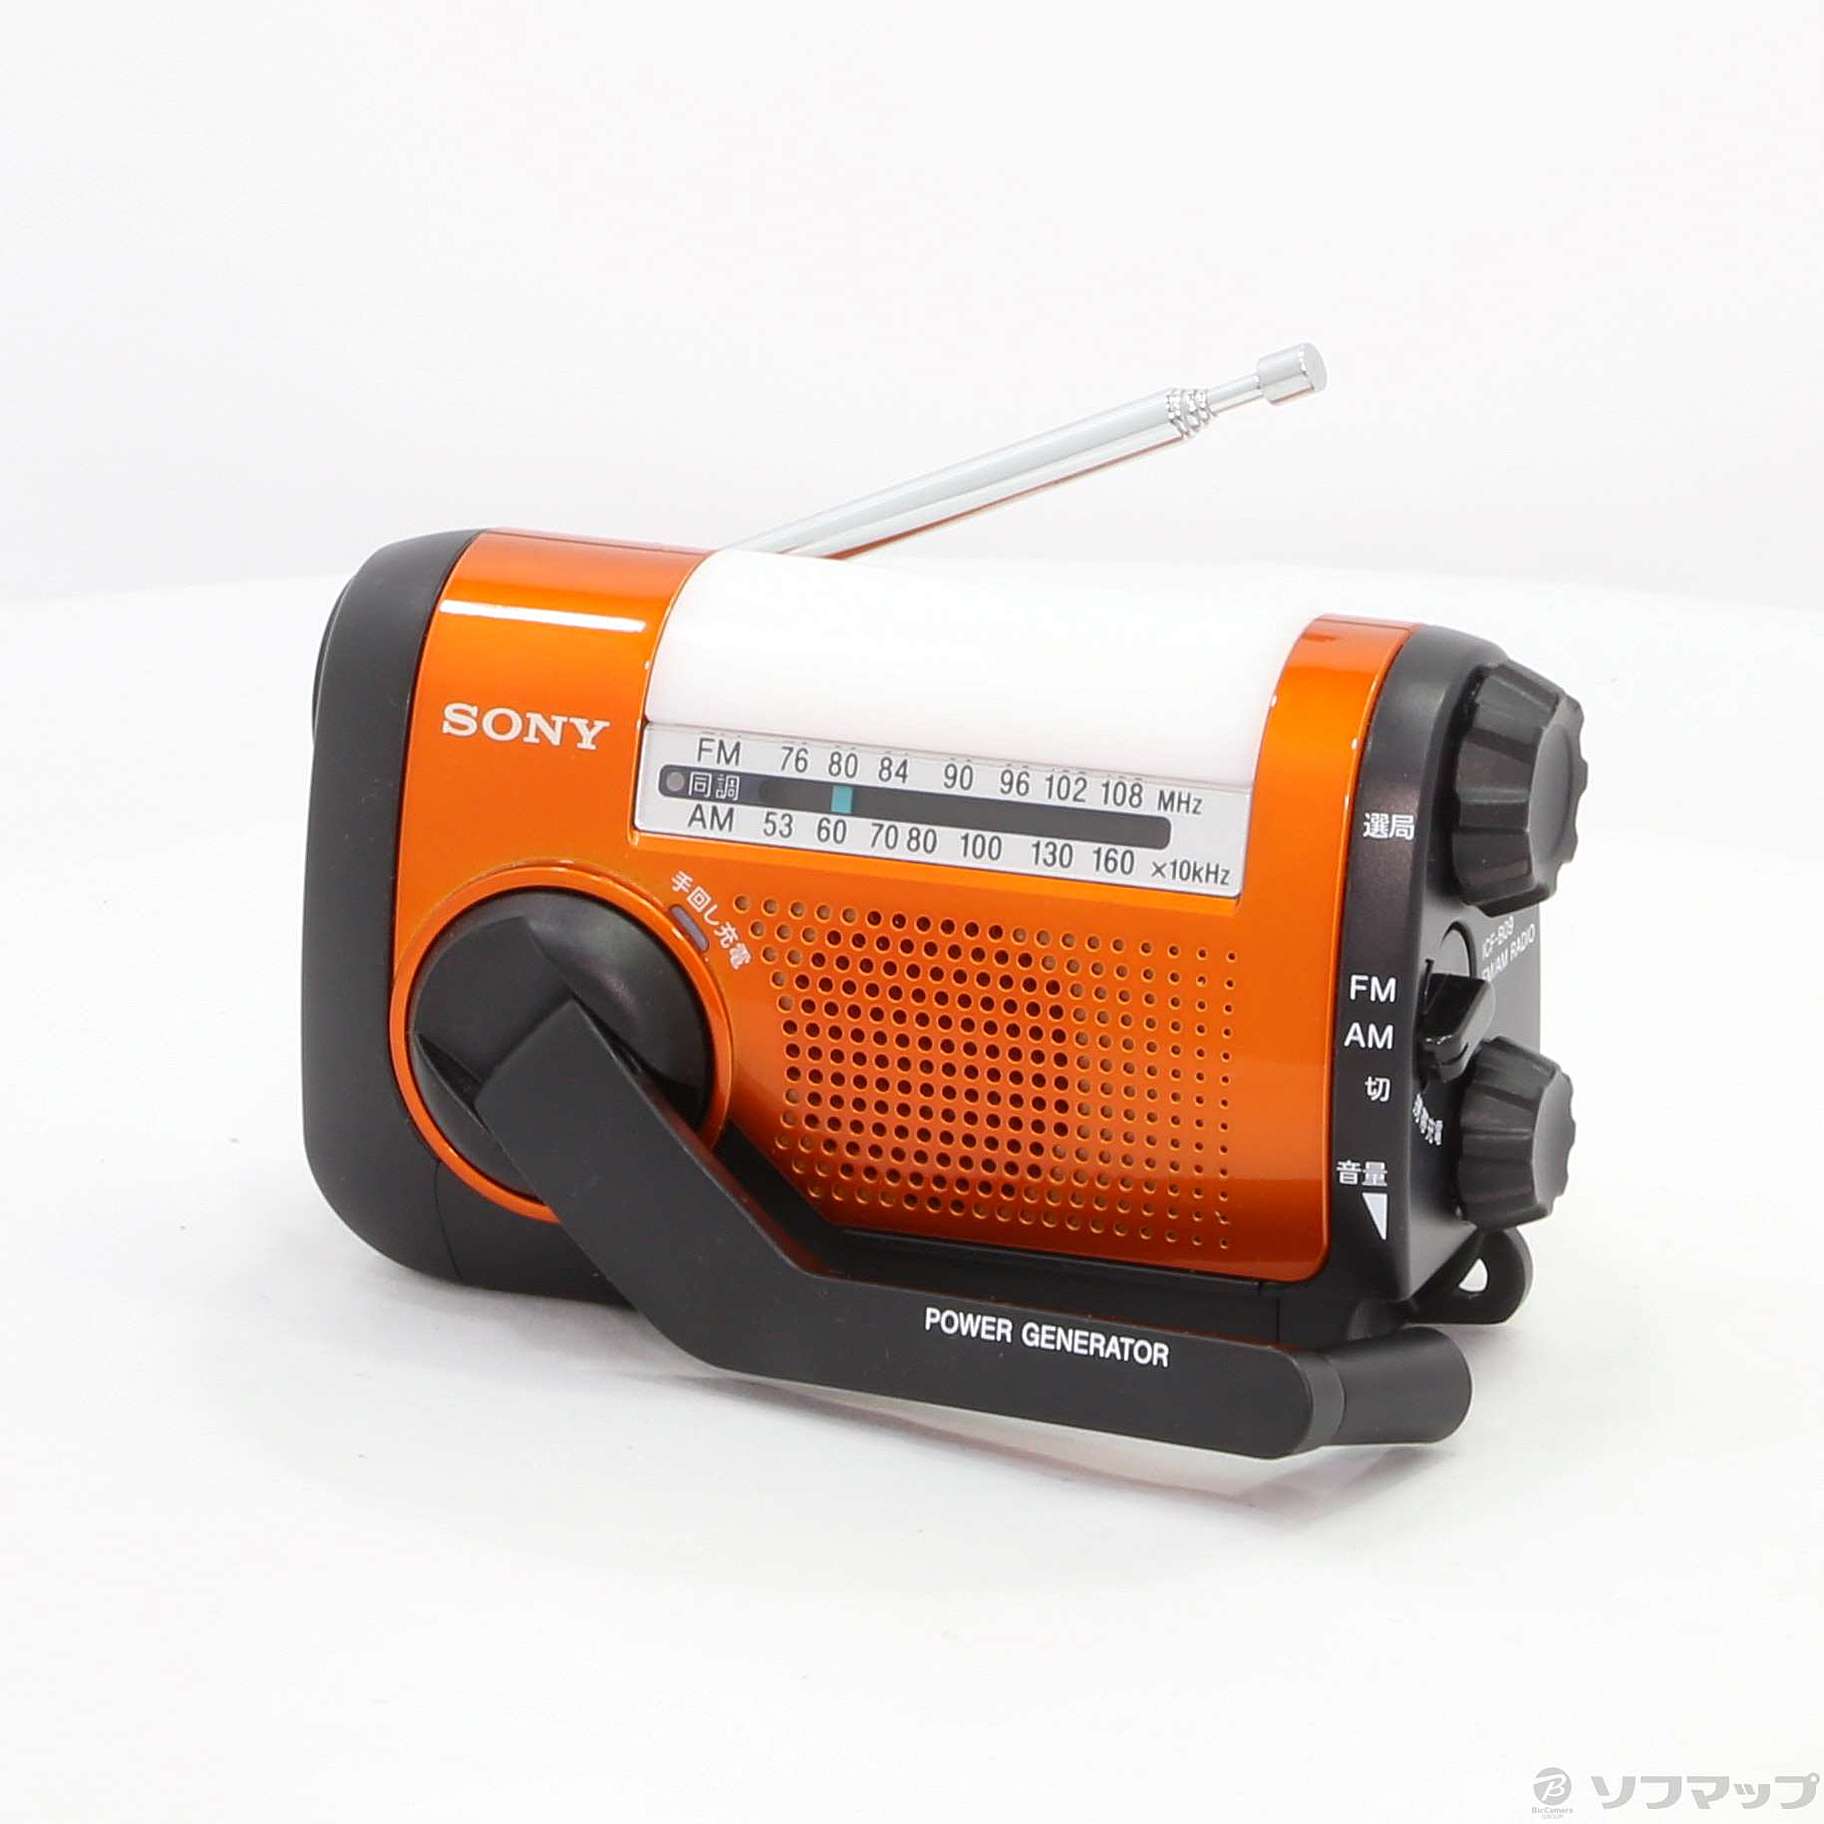 SONY FM AMポータブルラジオ ICF-B09-D オレンジ ソニー - ミニコンポ